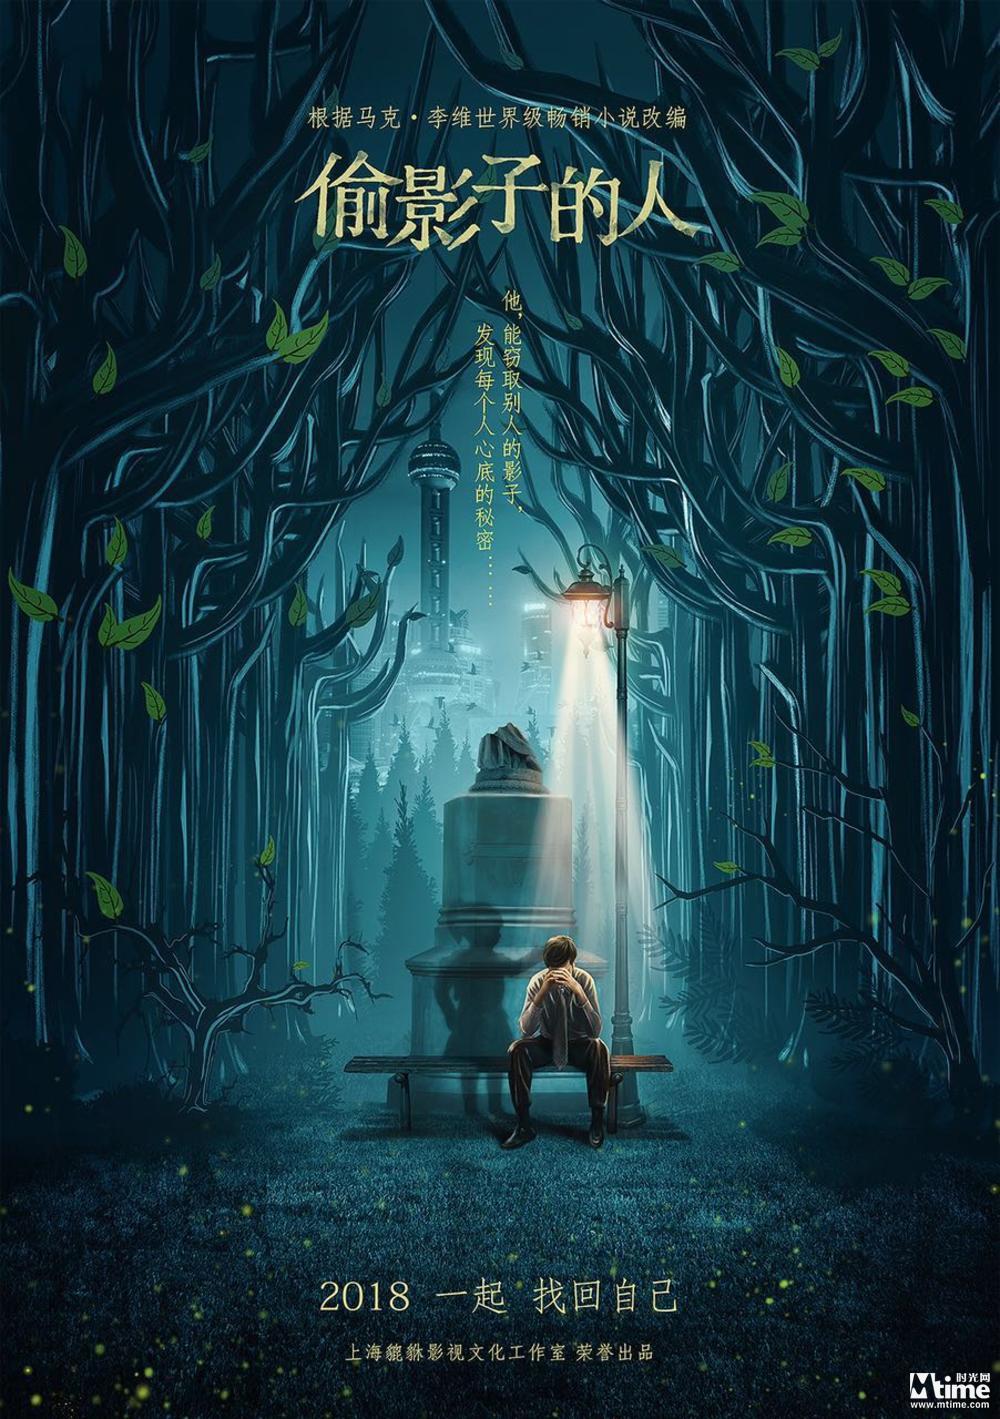 法国小说《偷影子的人》将拍中国版电影 首曝概念海报(图2)